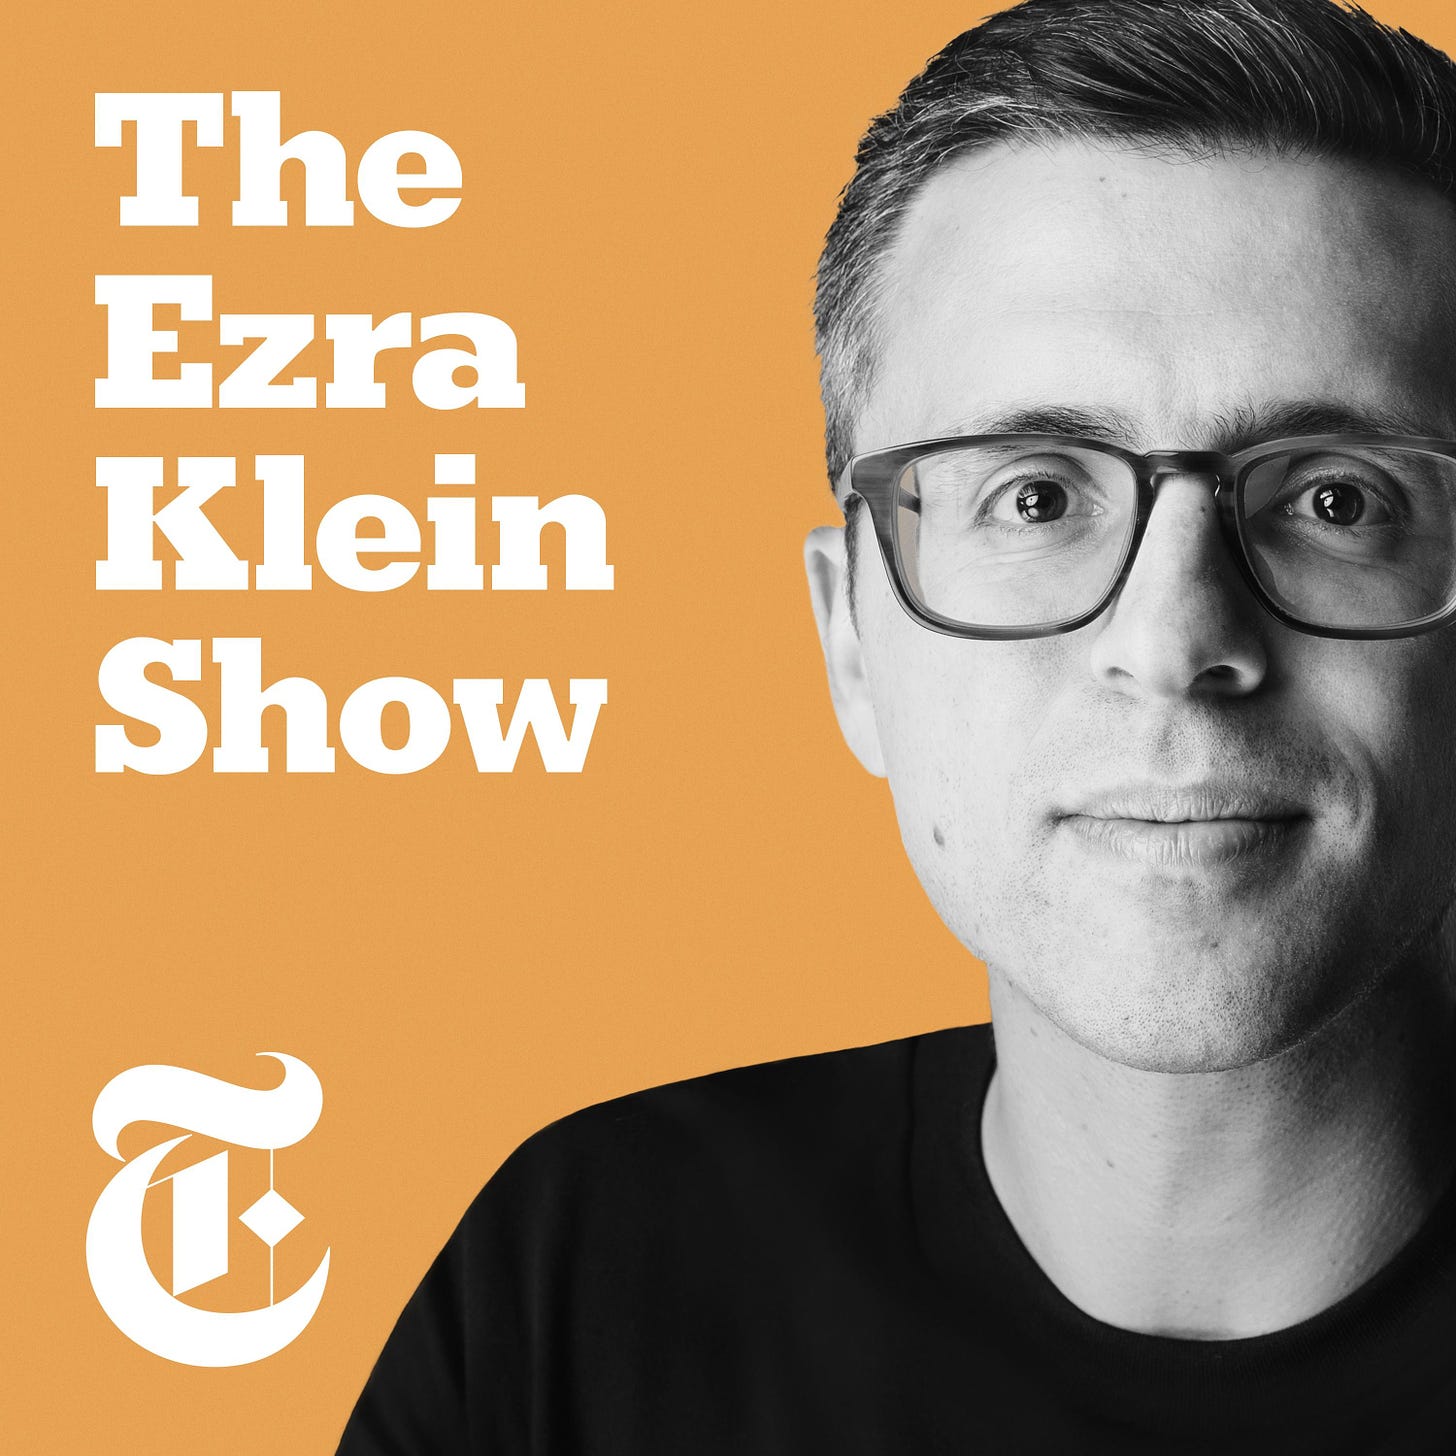 The Ezra Klein Show - The New York Times